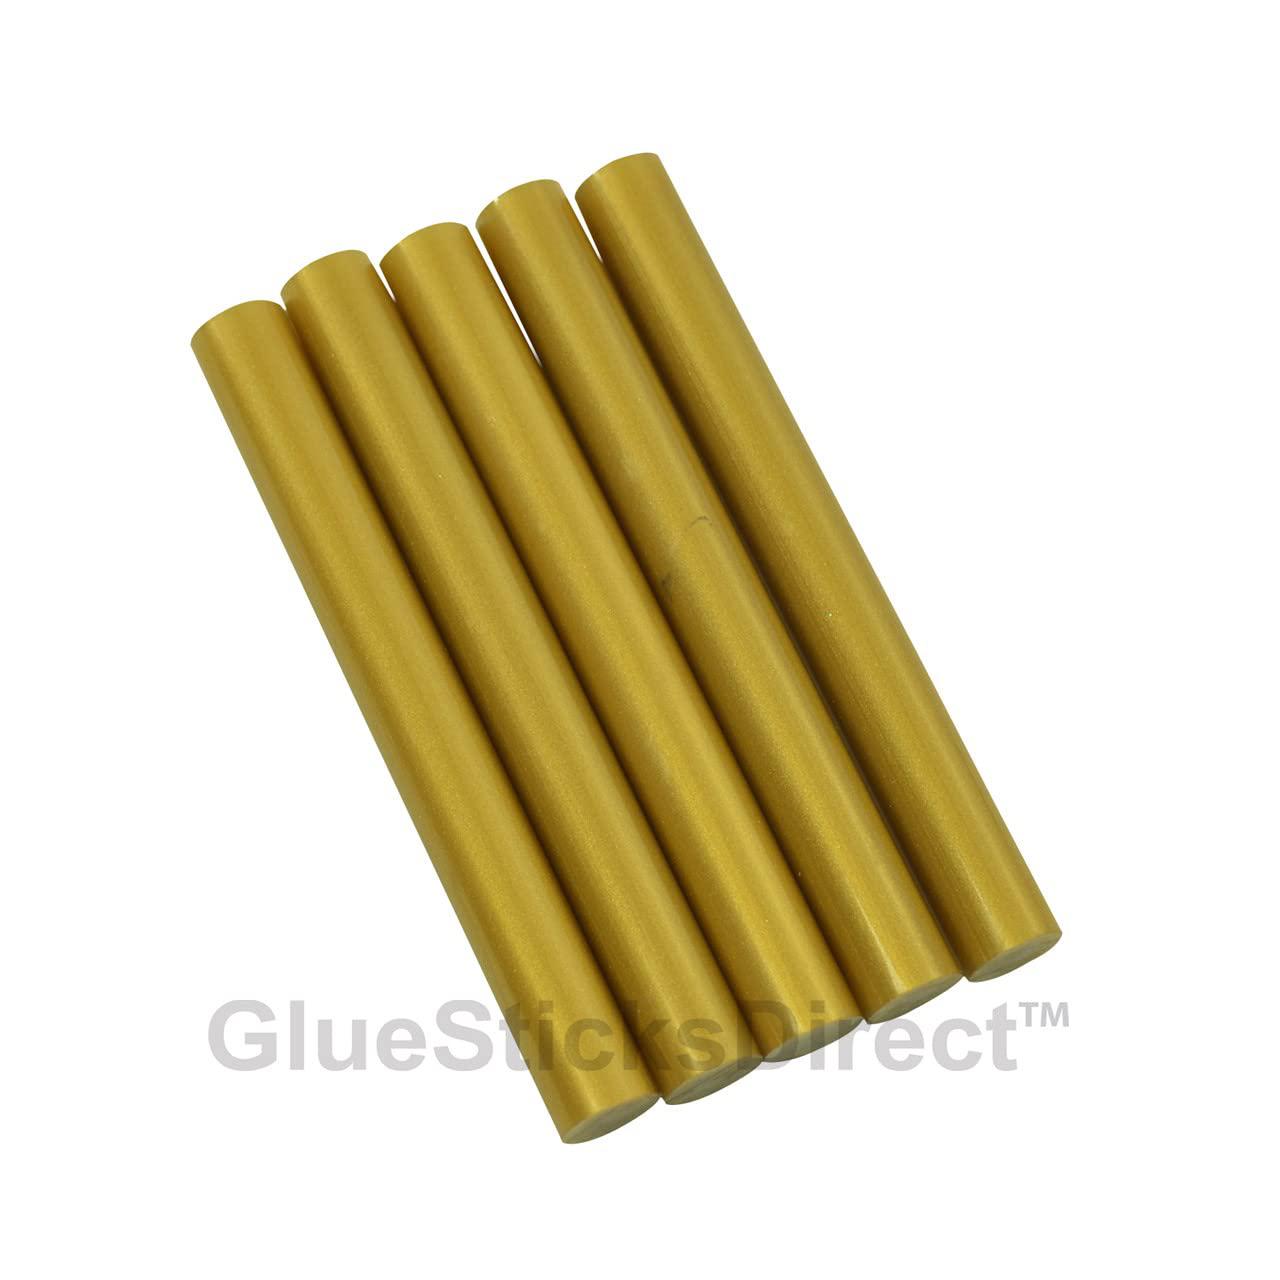 GlueSticksDirect.com gluesticksdirect gold metallic colored glue sticks for hot, cool and dual temp glue guns, large bulk 5 lb box - 7/16" x 4"